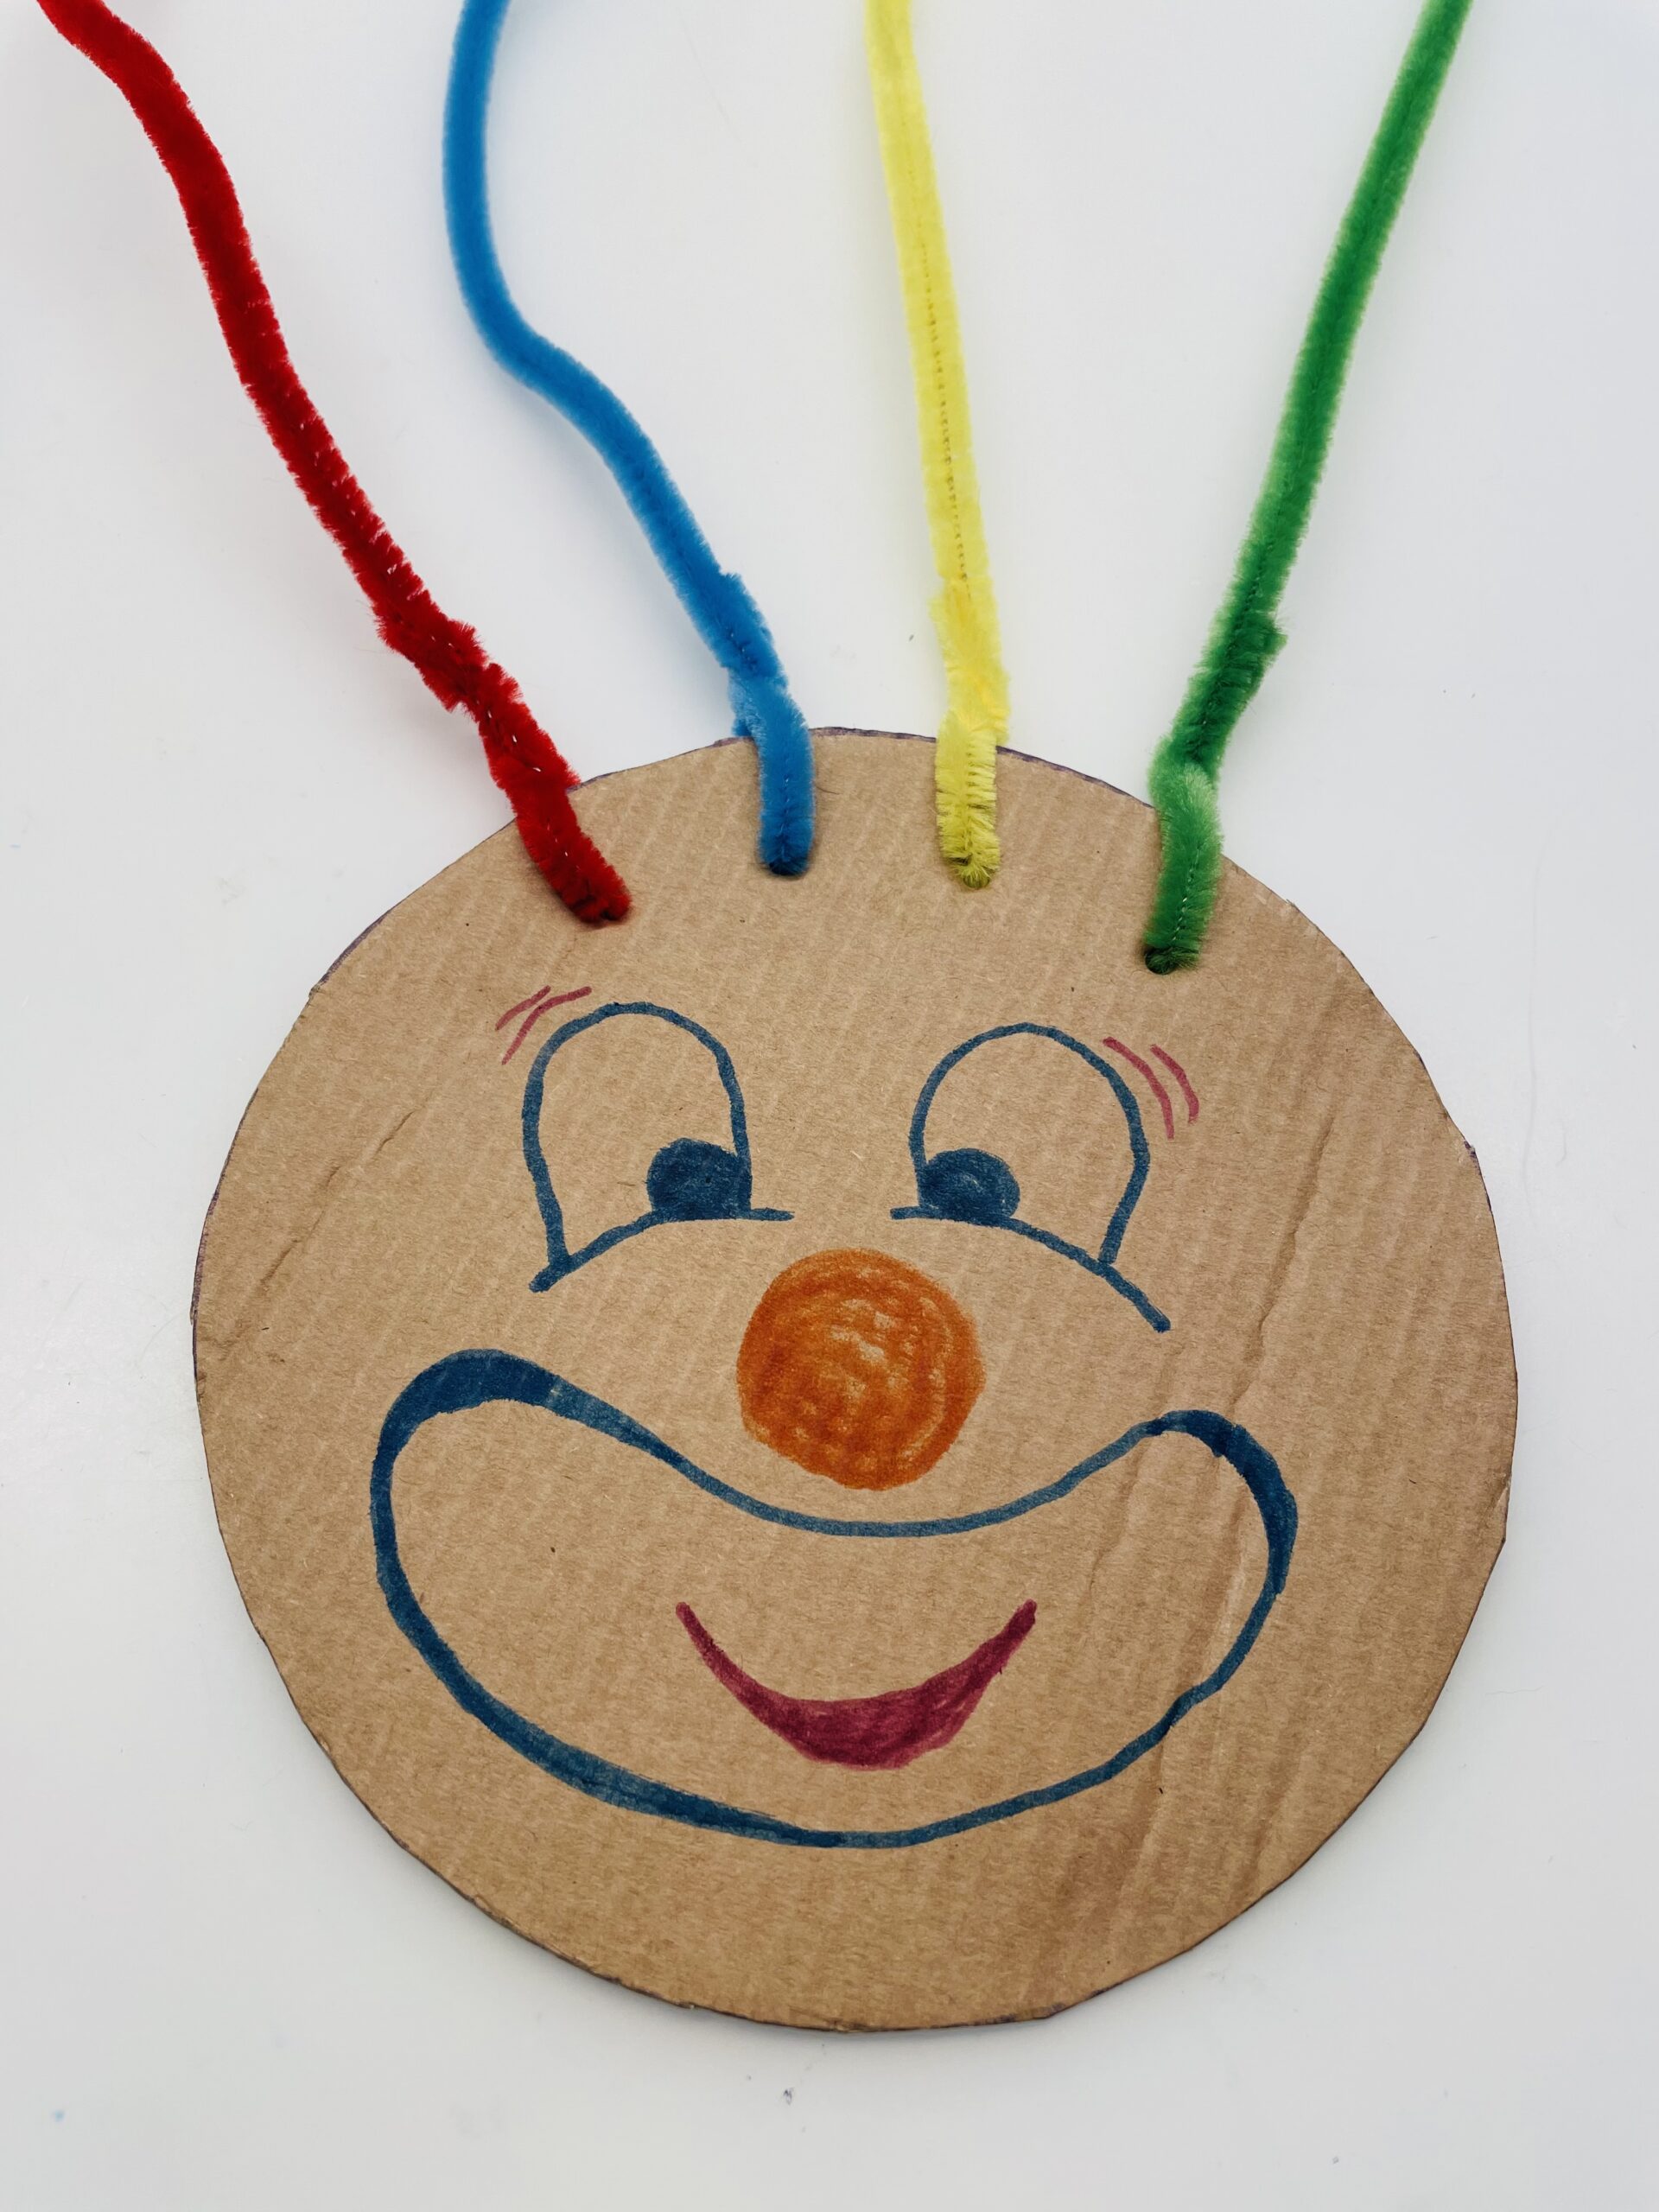 Bild zum Schritt 6 für das Bastel- und DIY-Abenteuer für Kinder: 'Jetzt malt ihr ein lustiges Clown-Gesicht auf den Kreis.'